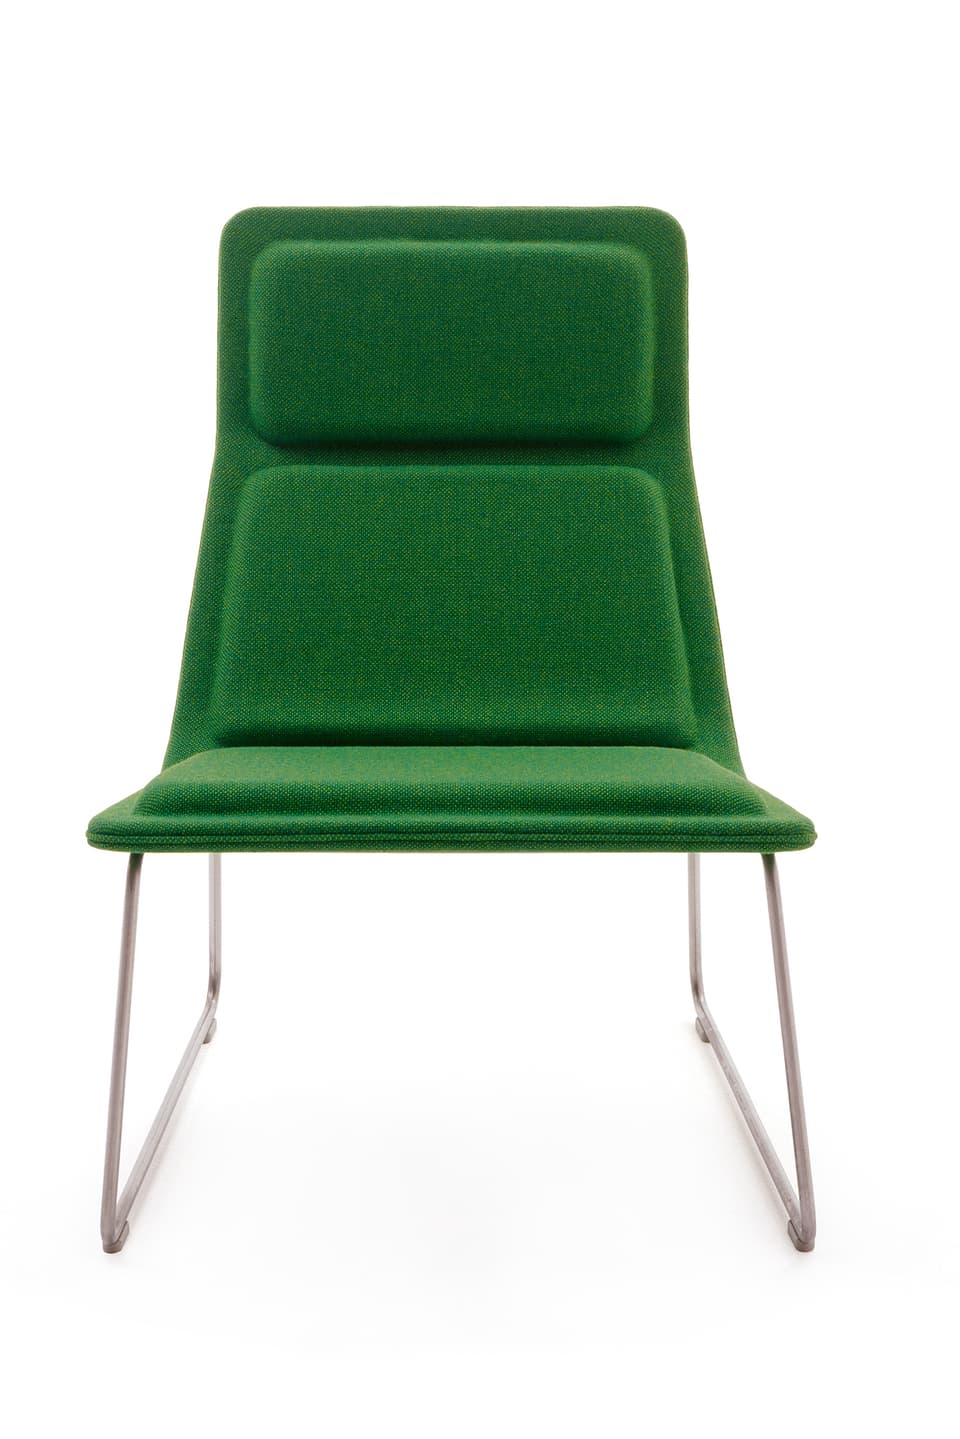 Eleganter Sessel mit gepolsterter Sitzfläche und Beinen aus Edelstahl.